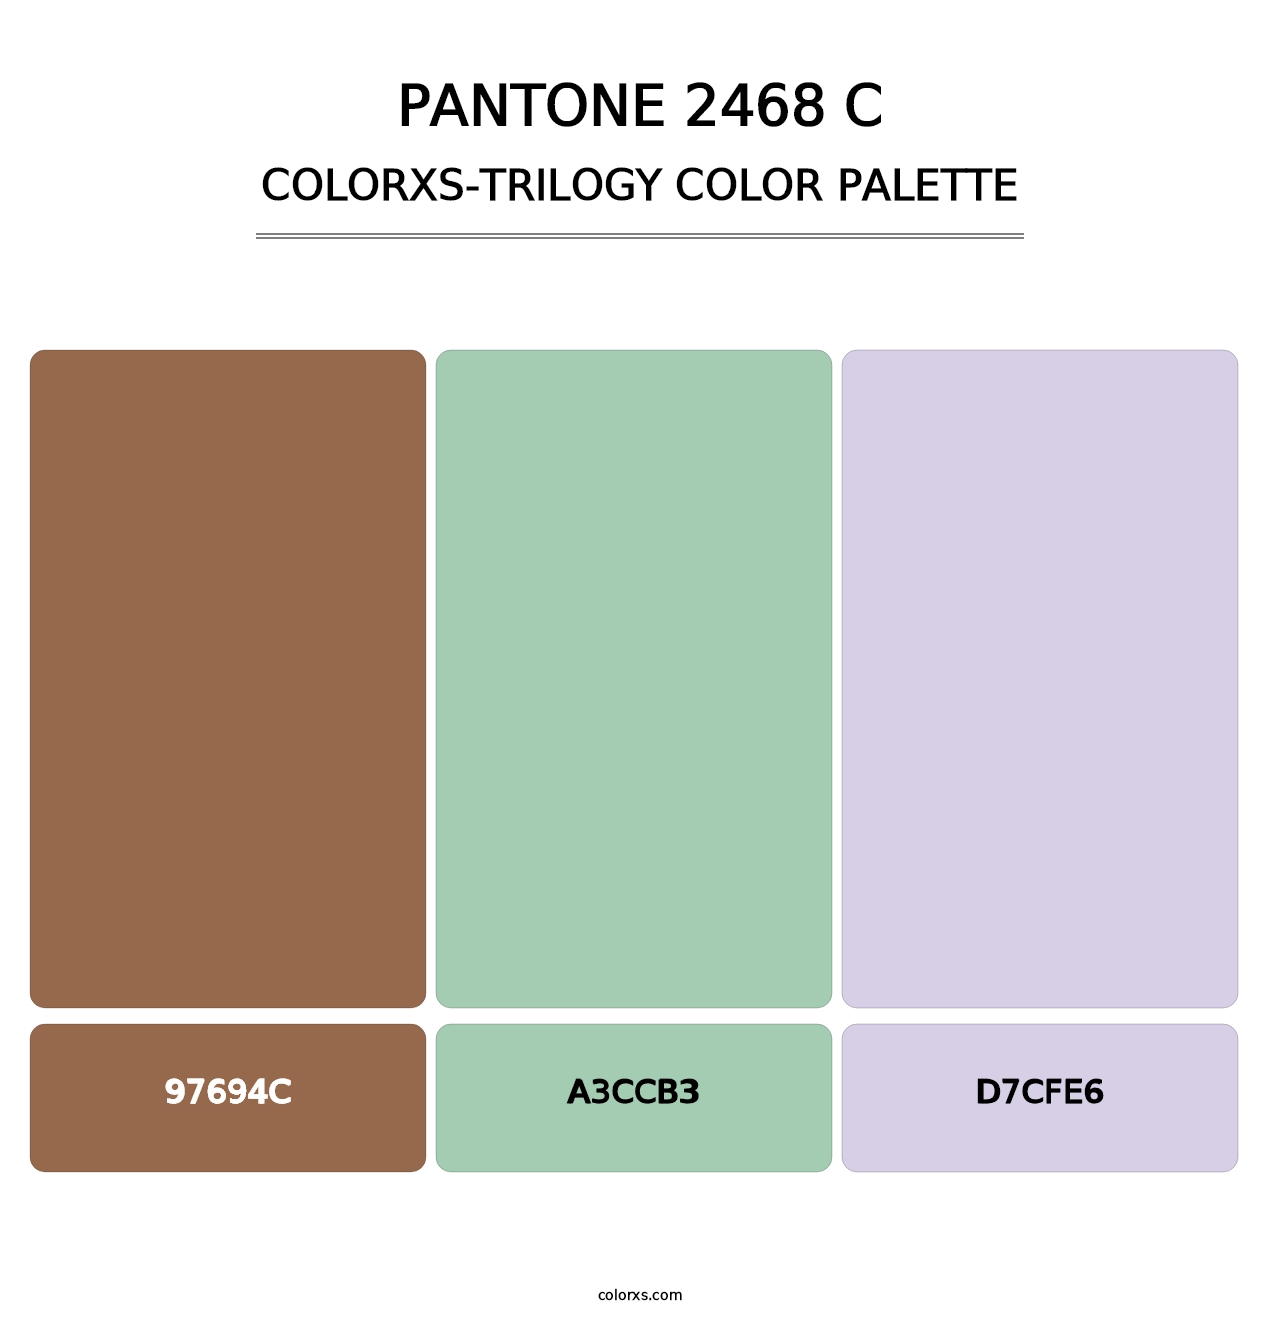 PANTONE 2468 C - Colorxs Trilogy Palette